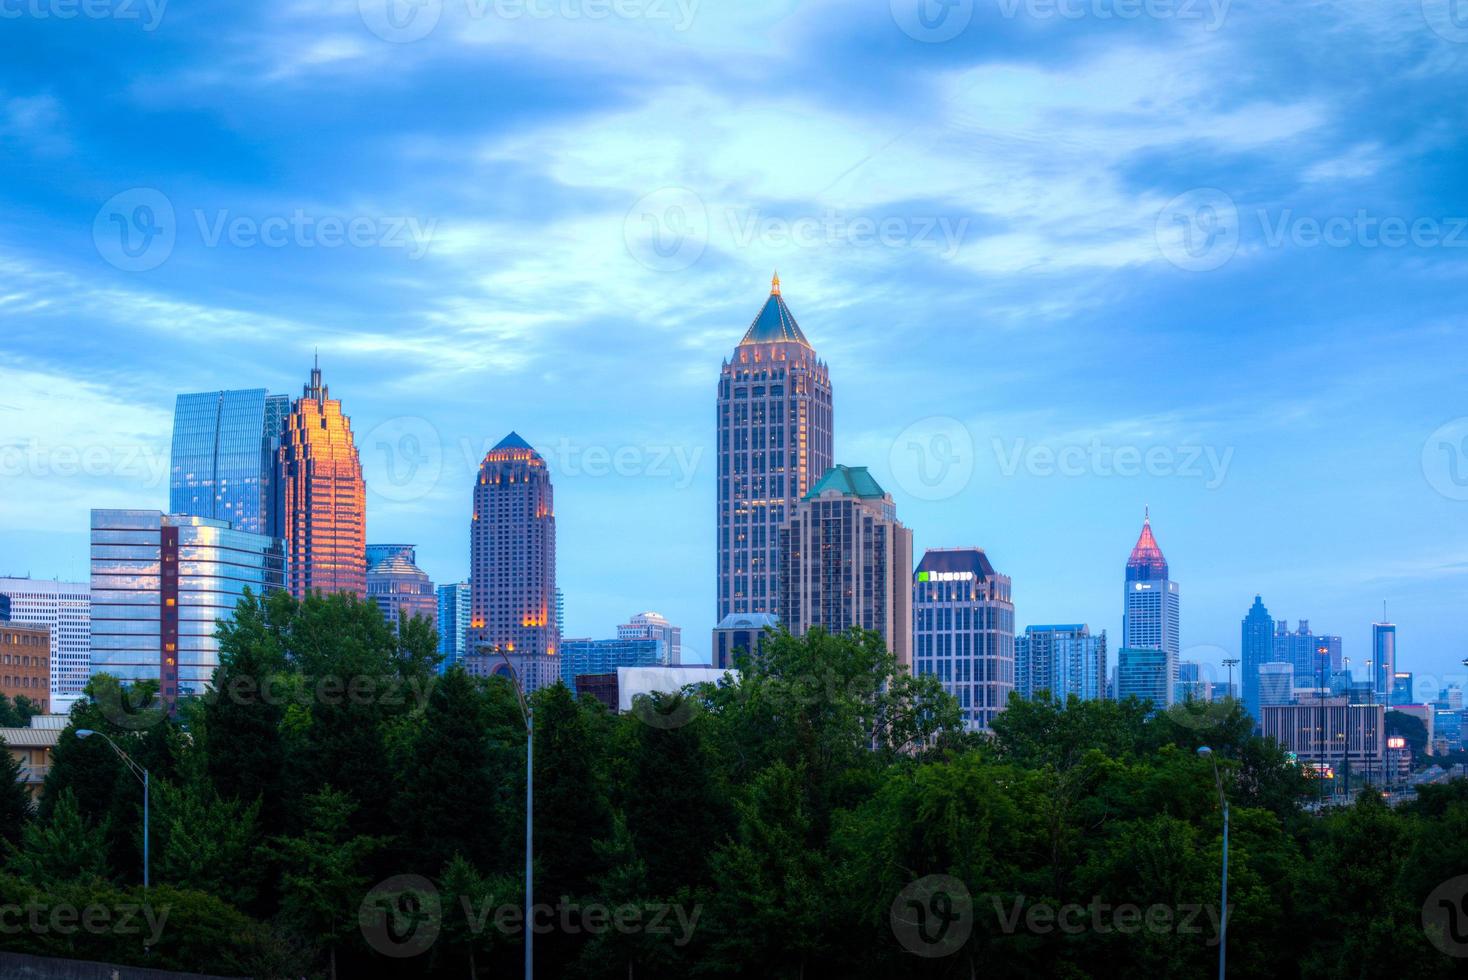 Atlanta downtown at dusk photo